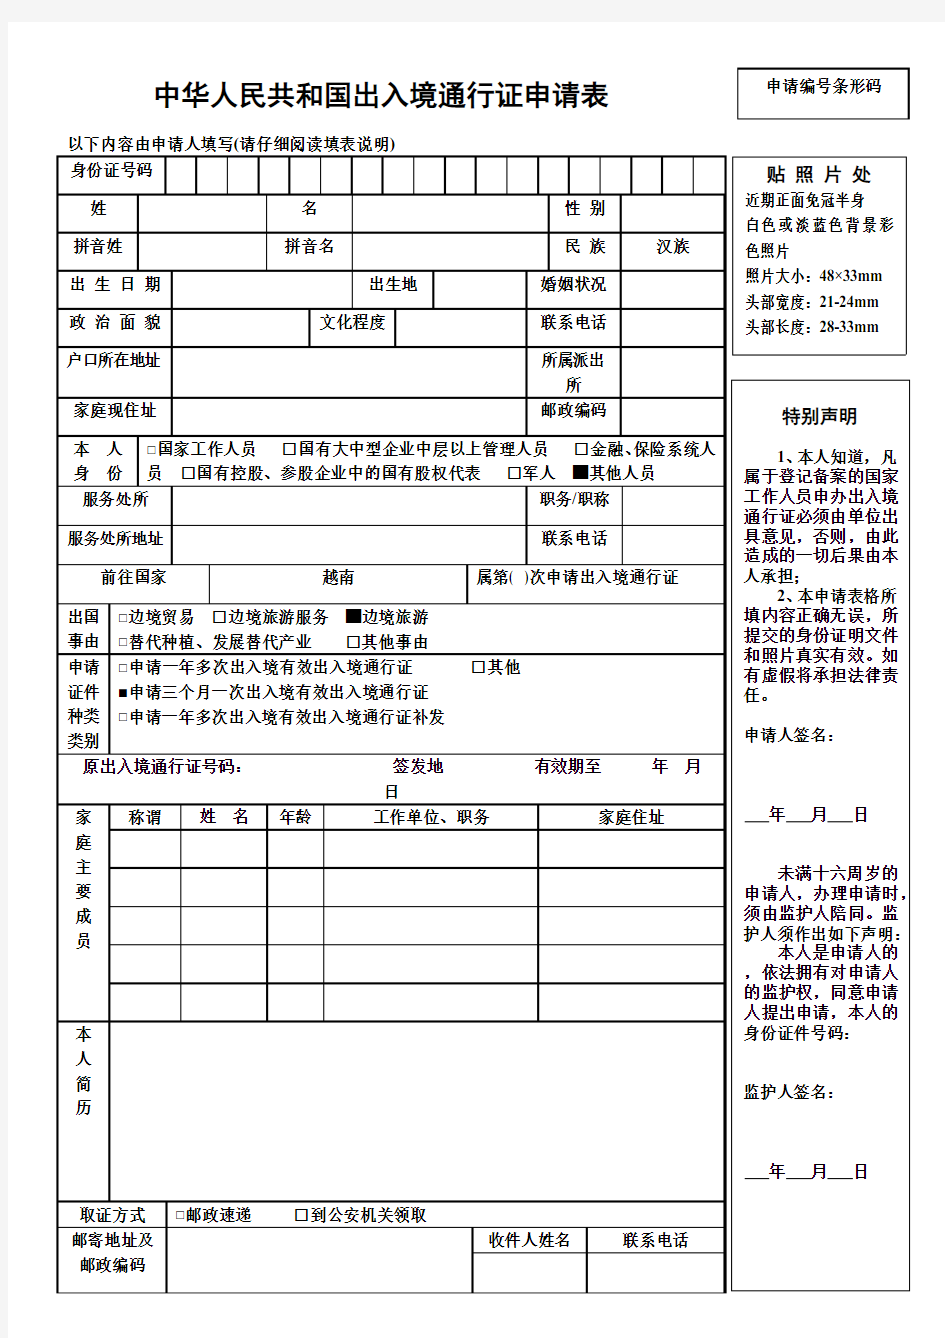 中华人民共和国出入境通行证申请表